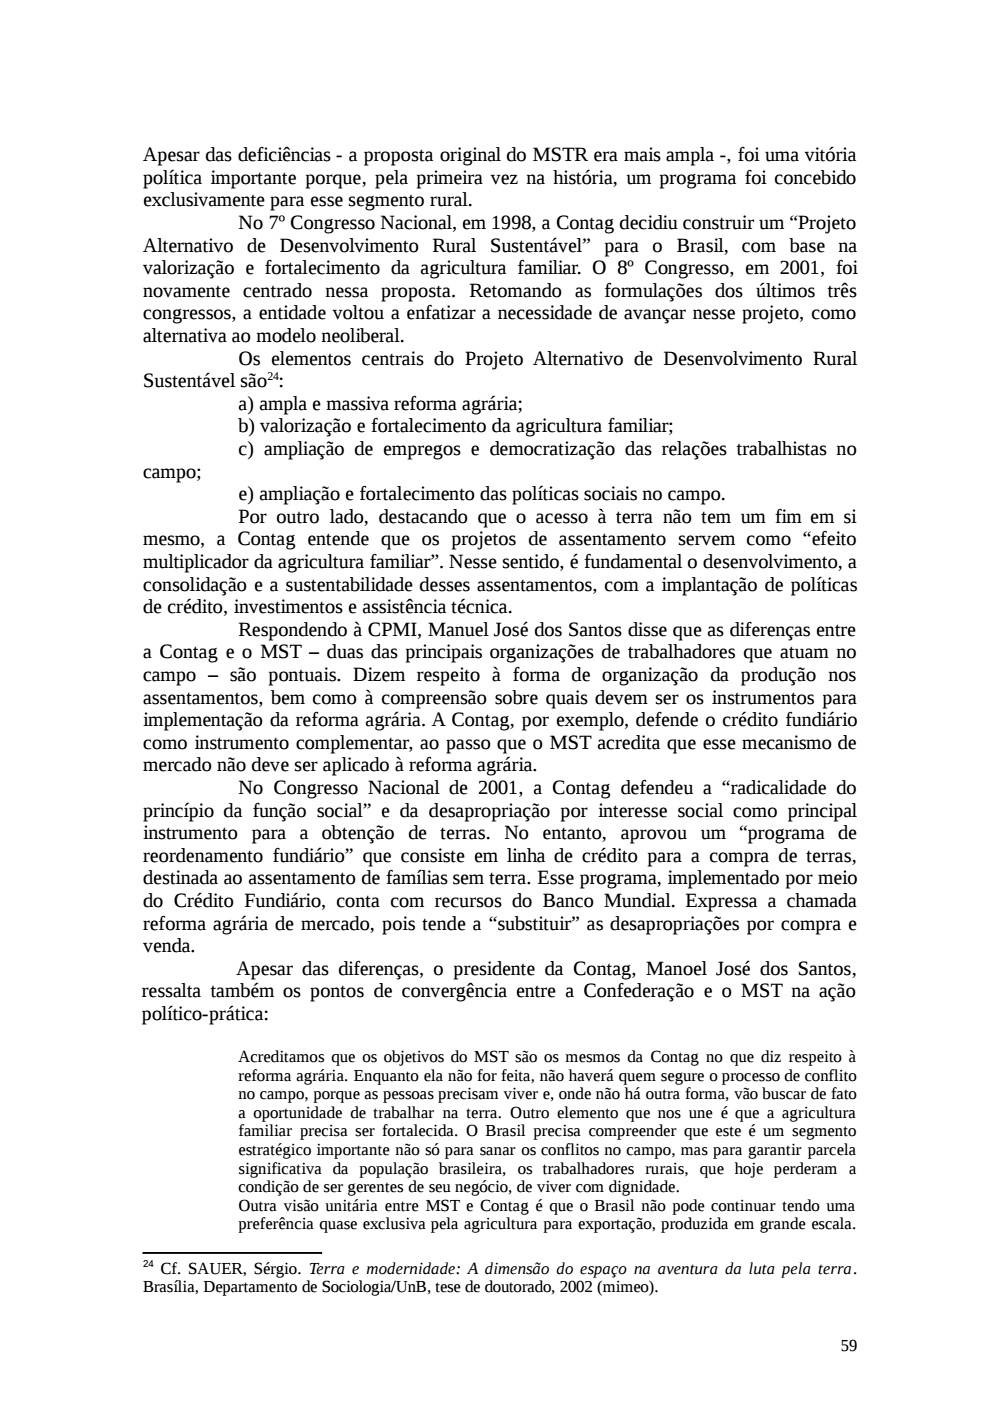 Page 59 from Relatório final da comissão